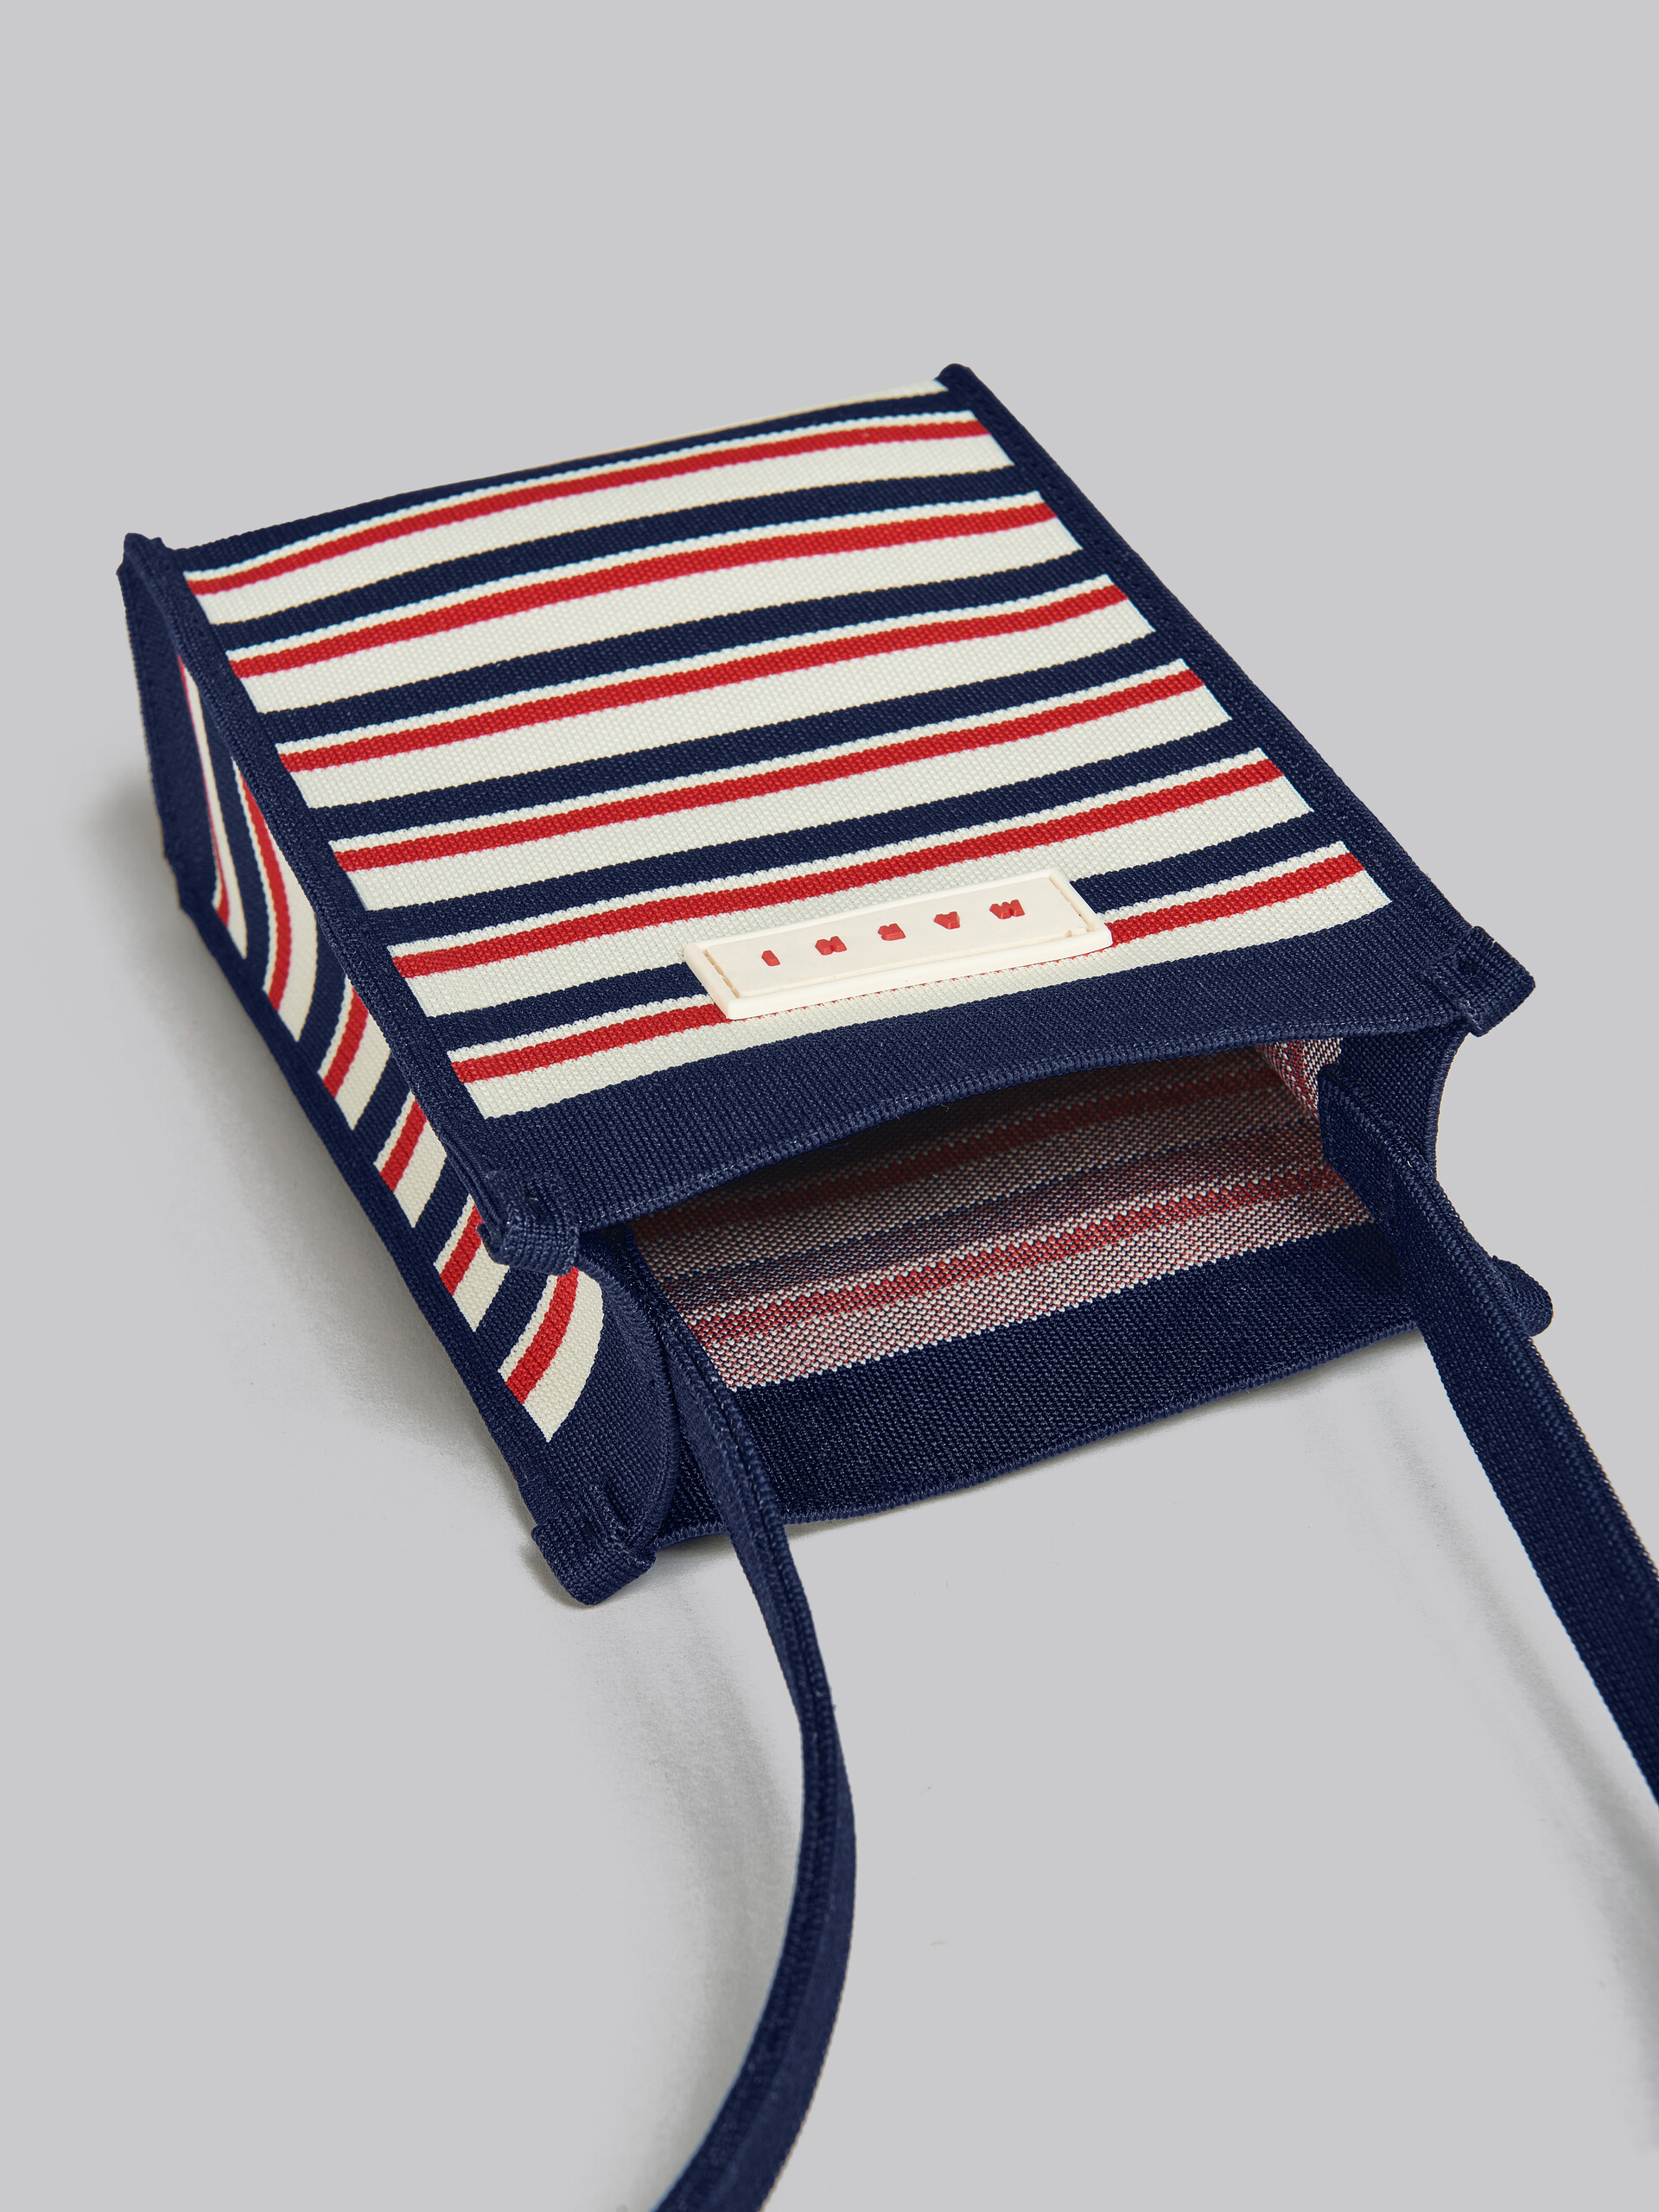 Mini-sac porté épaule en jacquard rayé bleu marine, blanc et rouge - Sacs portés épaule - Image 4